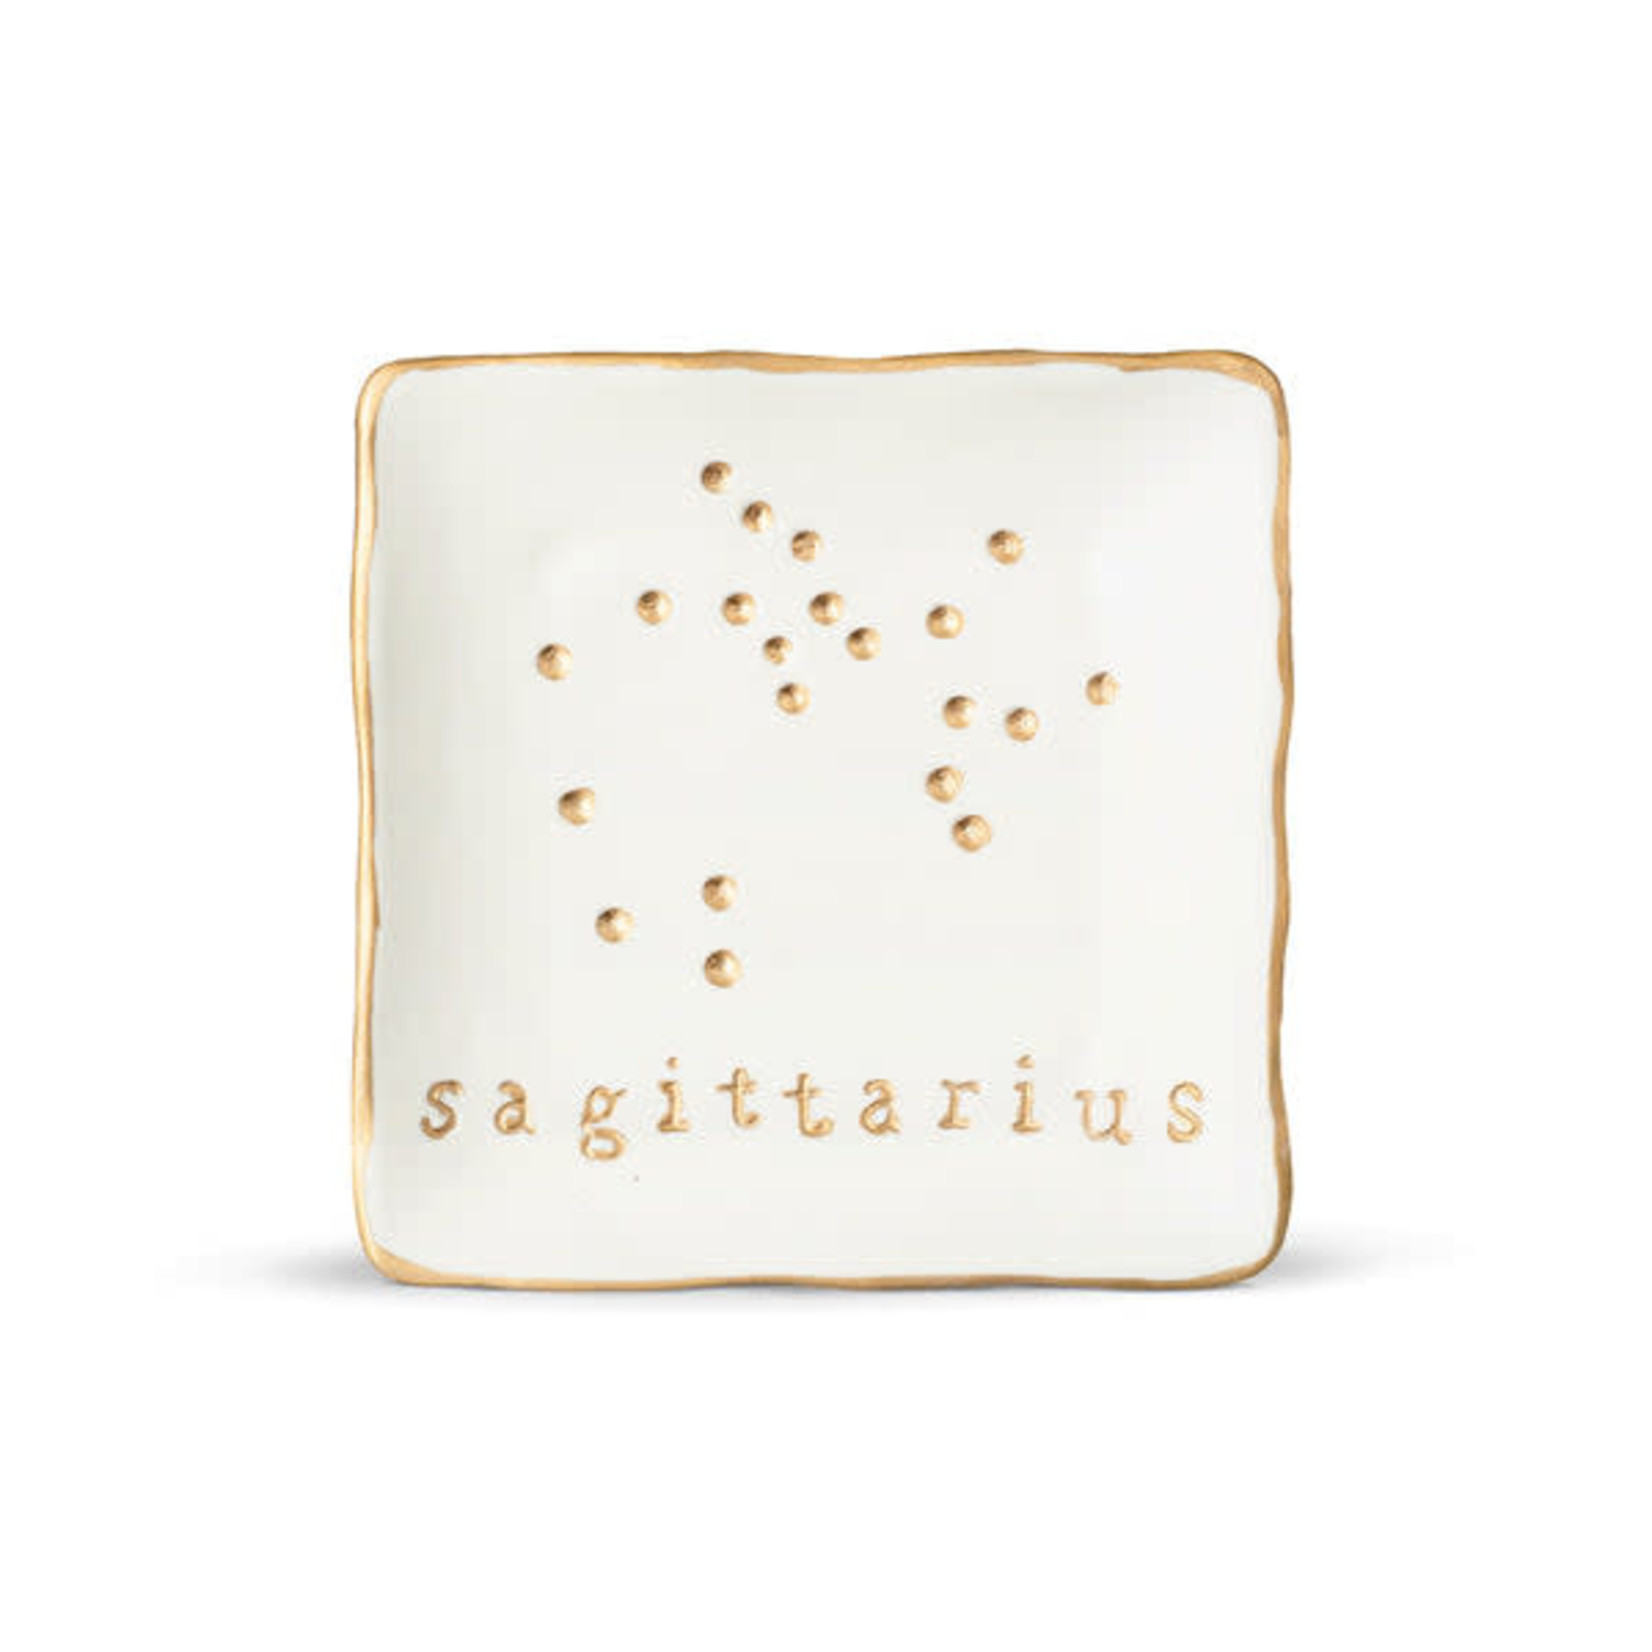 Finch Berry Sagittarius Ceramic Soap Dish